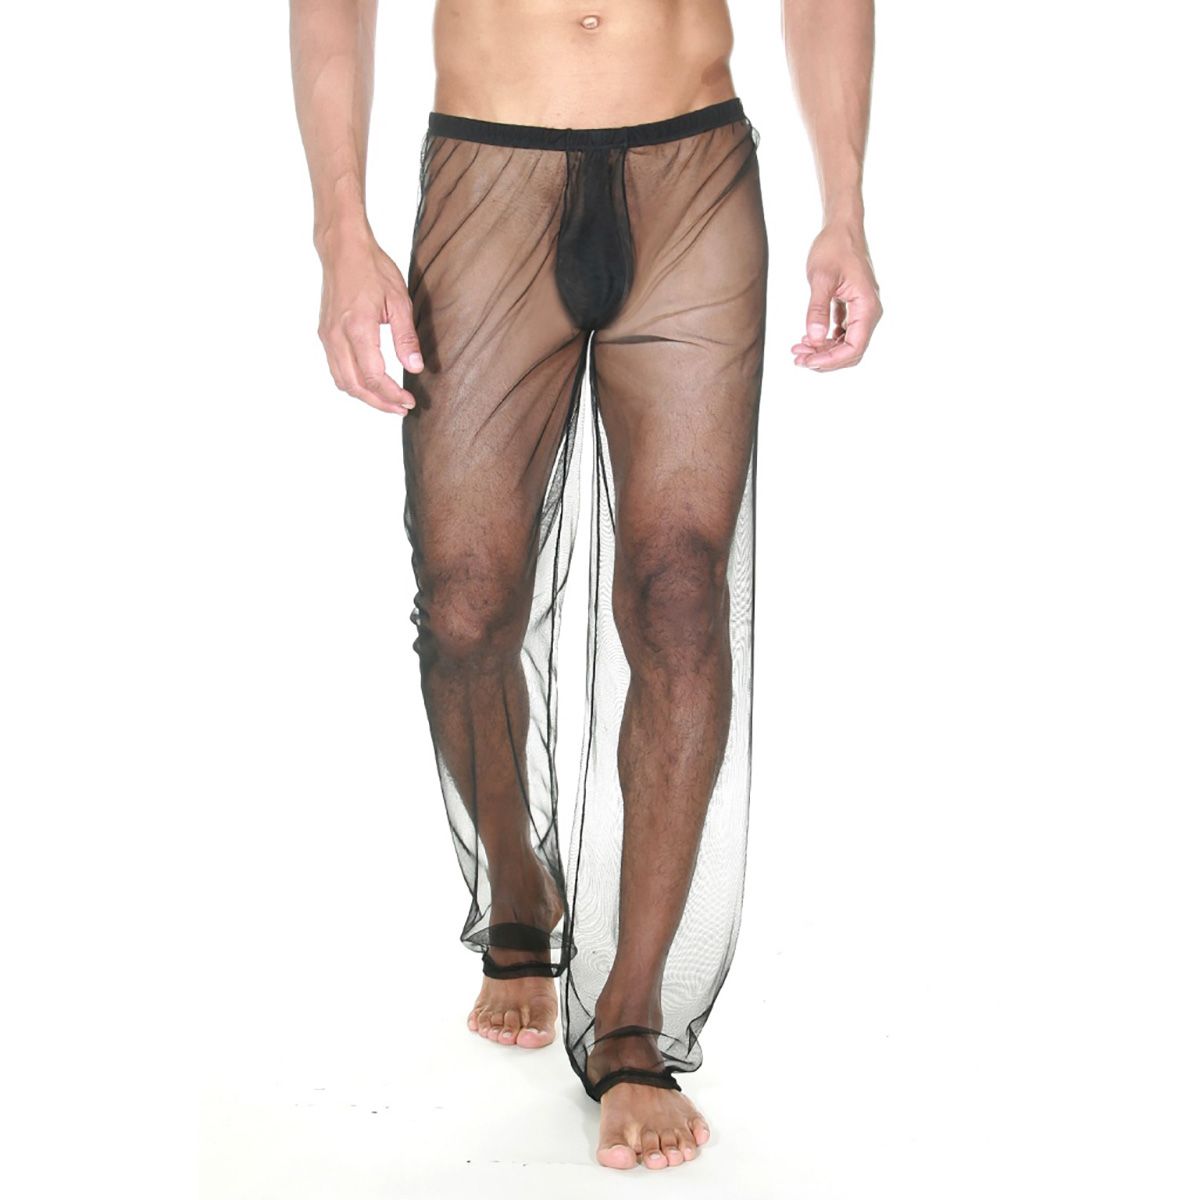 Прозрачные мужские брюки со свободной посадкой и закрытой интимной зоной. Подобные брюки станут отличным дополнением к любому образу и разнообразят вашу интимную жизнь.